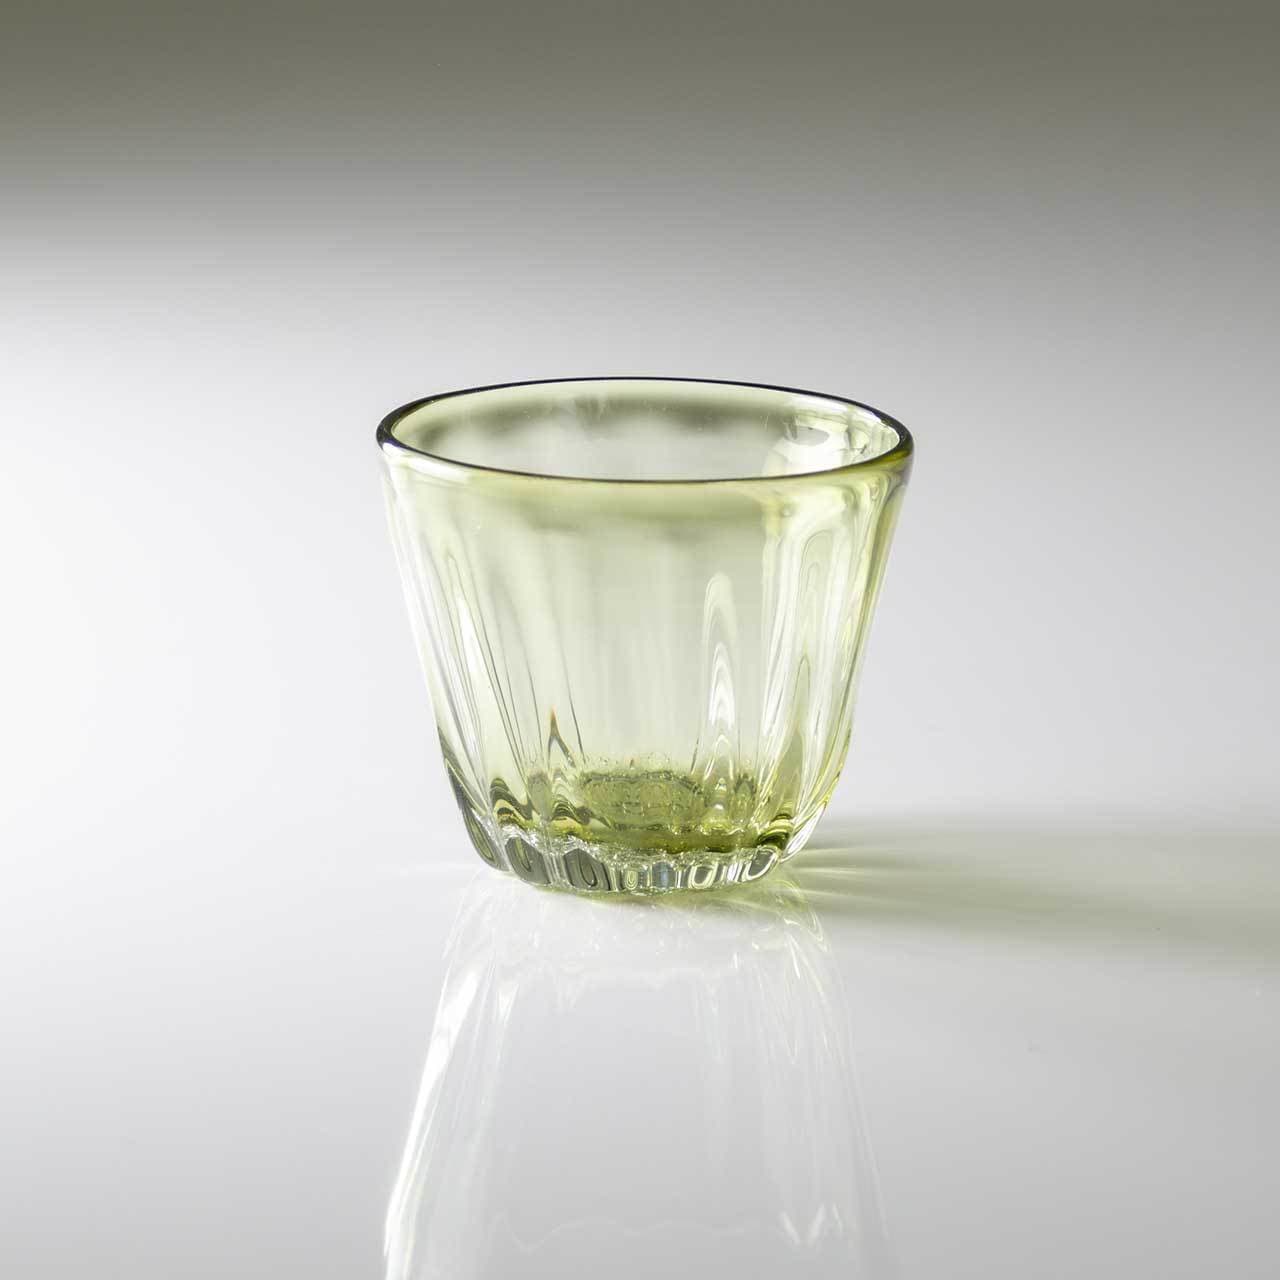 琉球ガラス-白鴉再生硝子器製作所-そばちょこカップ-茶色